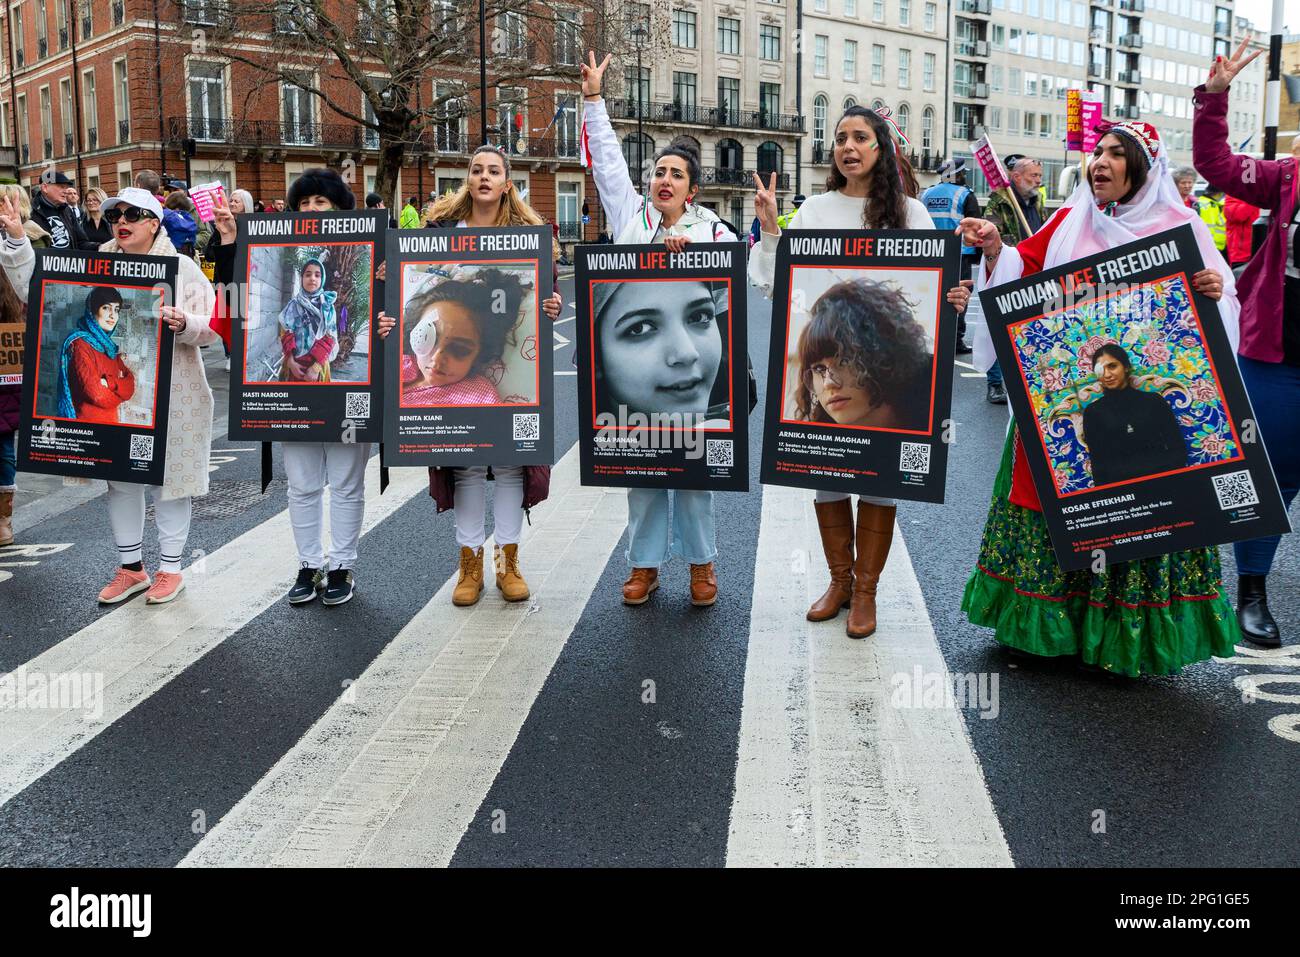 Woman Life Freedom, iranienne, Iran manifestations lors d'une manifestation qui se tient à Londres à l'occasion de la Journée des Nations Unies contre le racisme. Photos de victimes Banque D'Images